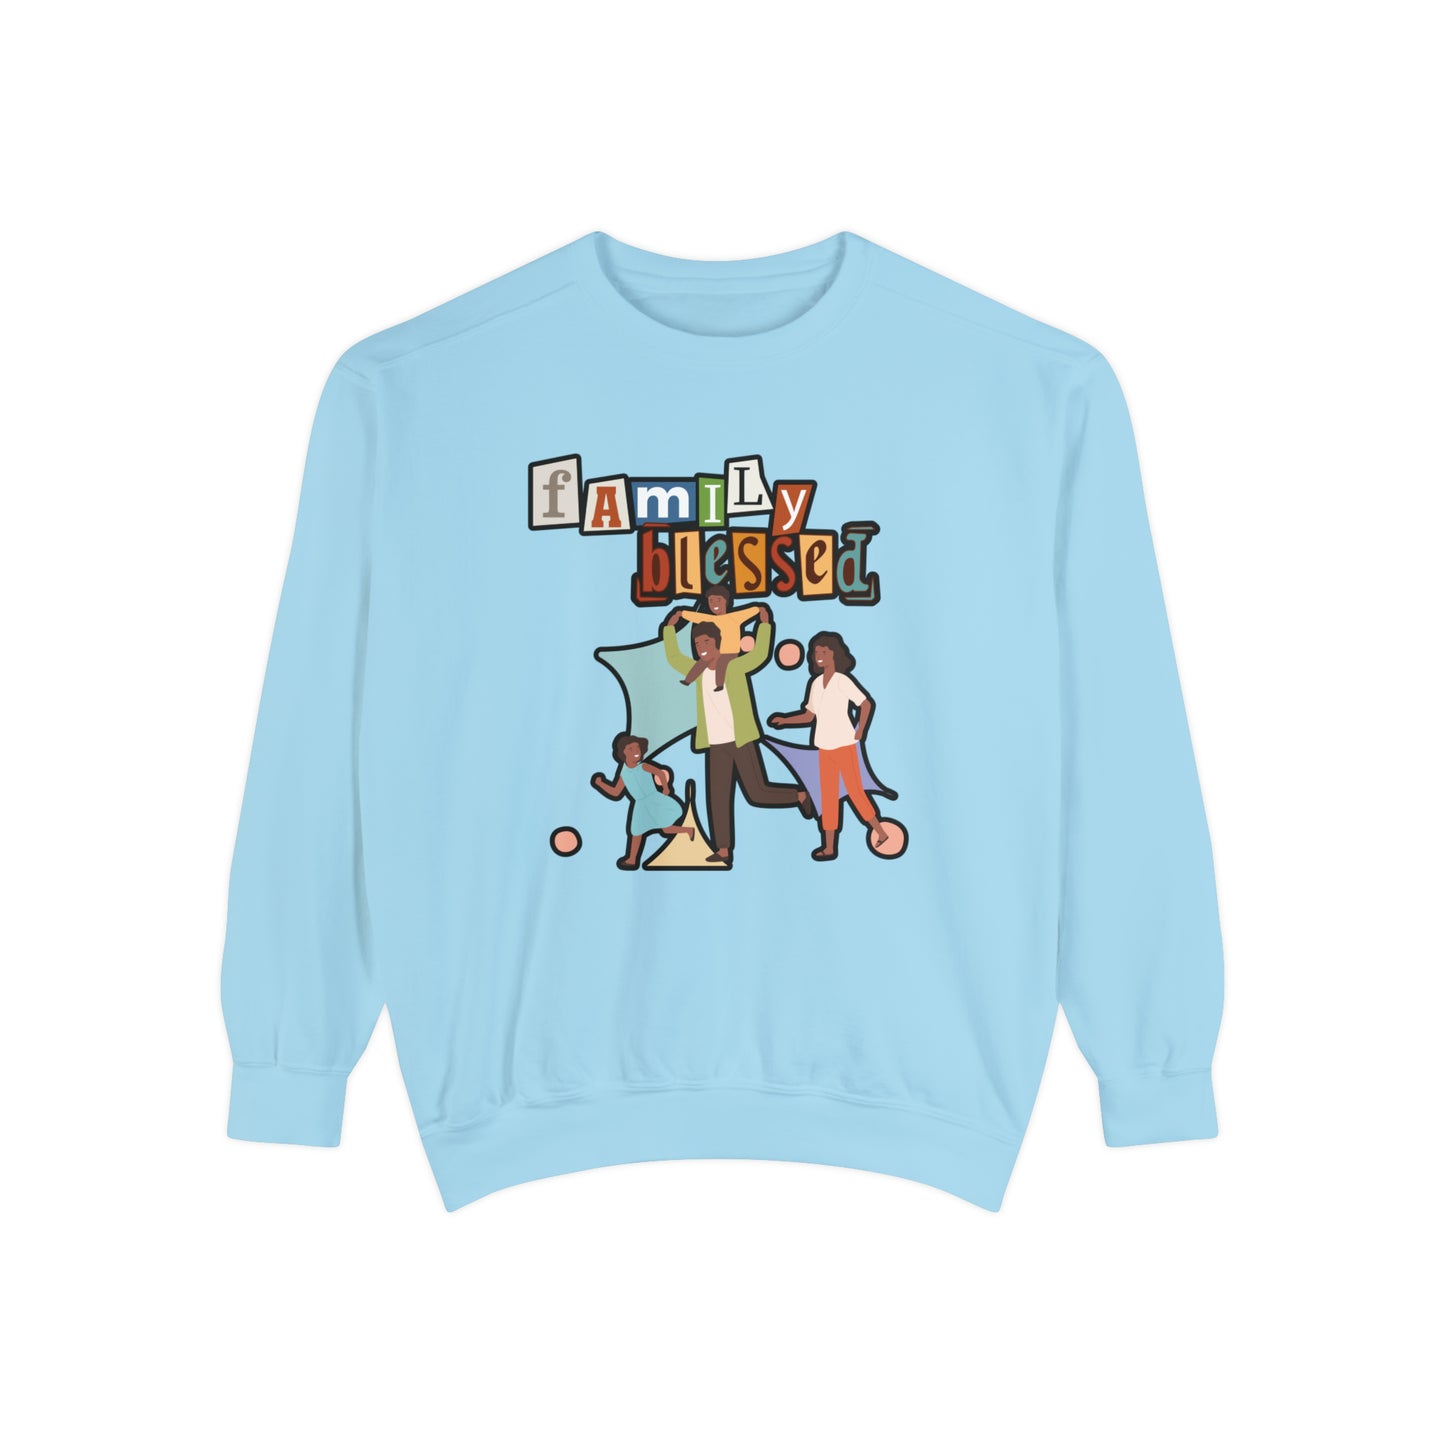 Celebrate Family Unity: Blessed Family Unisex Garment-Dyed Sweatshirt